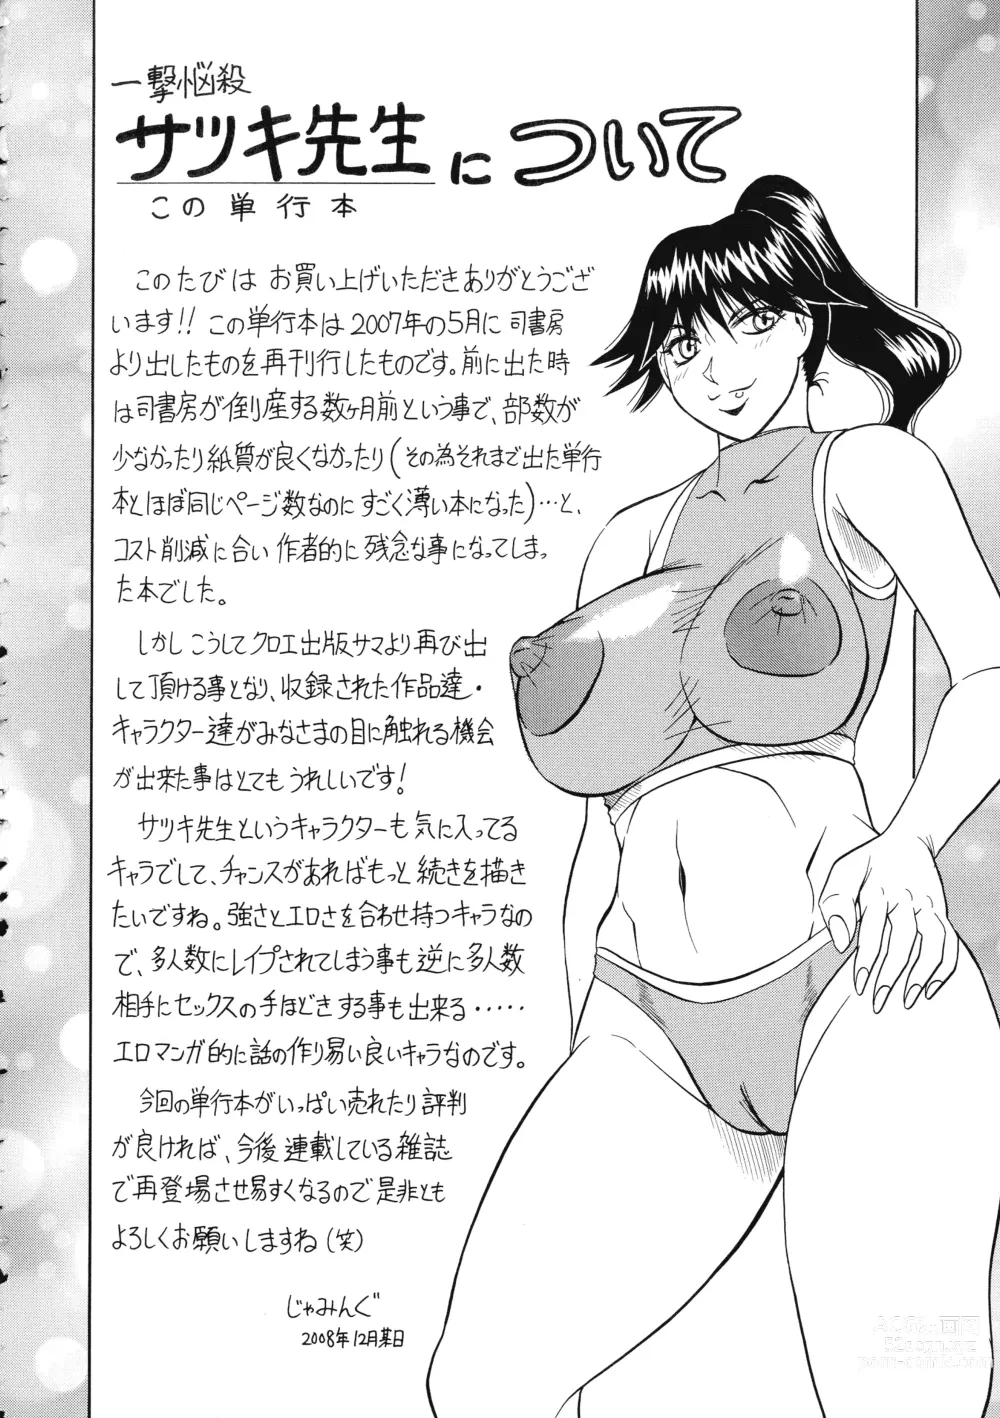 Page 164 of manga Ichigeki Nousatsu Satsuki-sensei